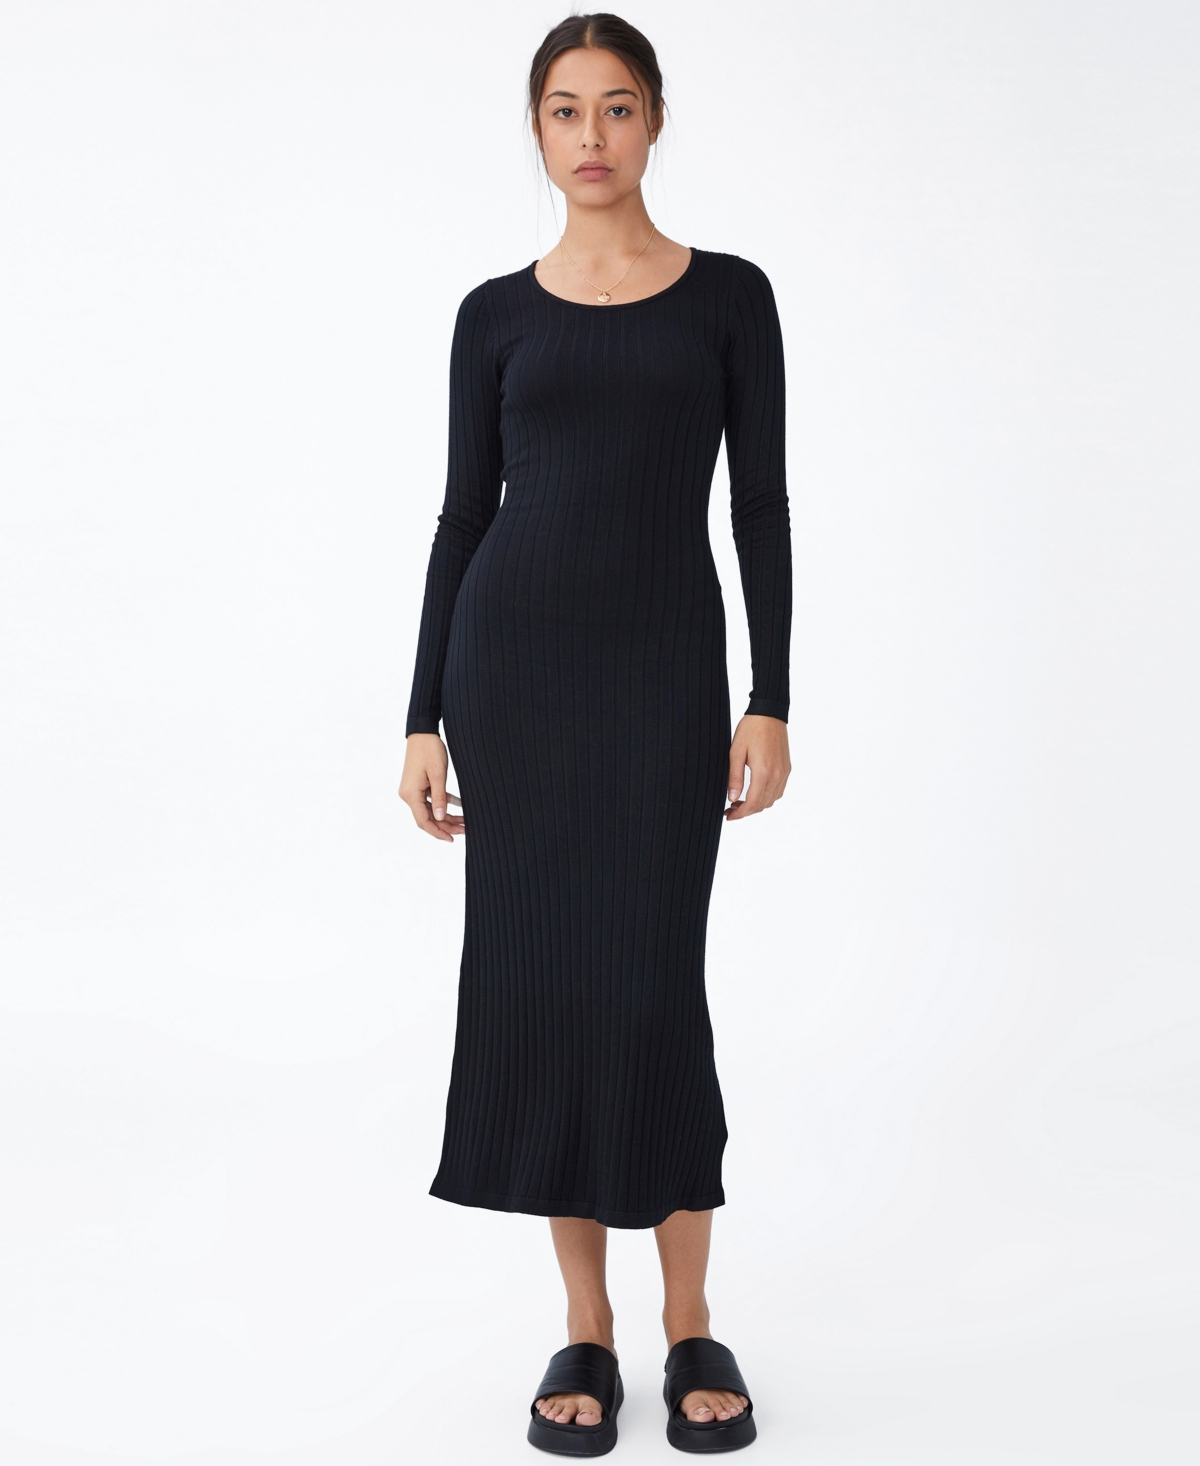 Cotton On Women's Space Dye Knit Midaxi Dress In Black